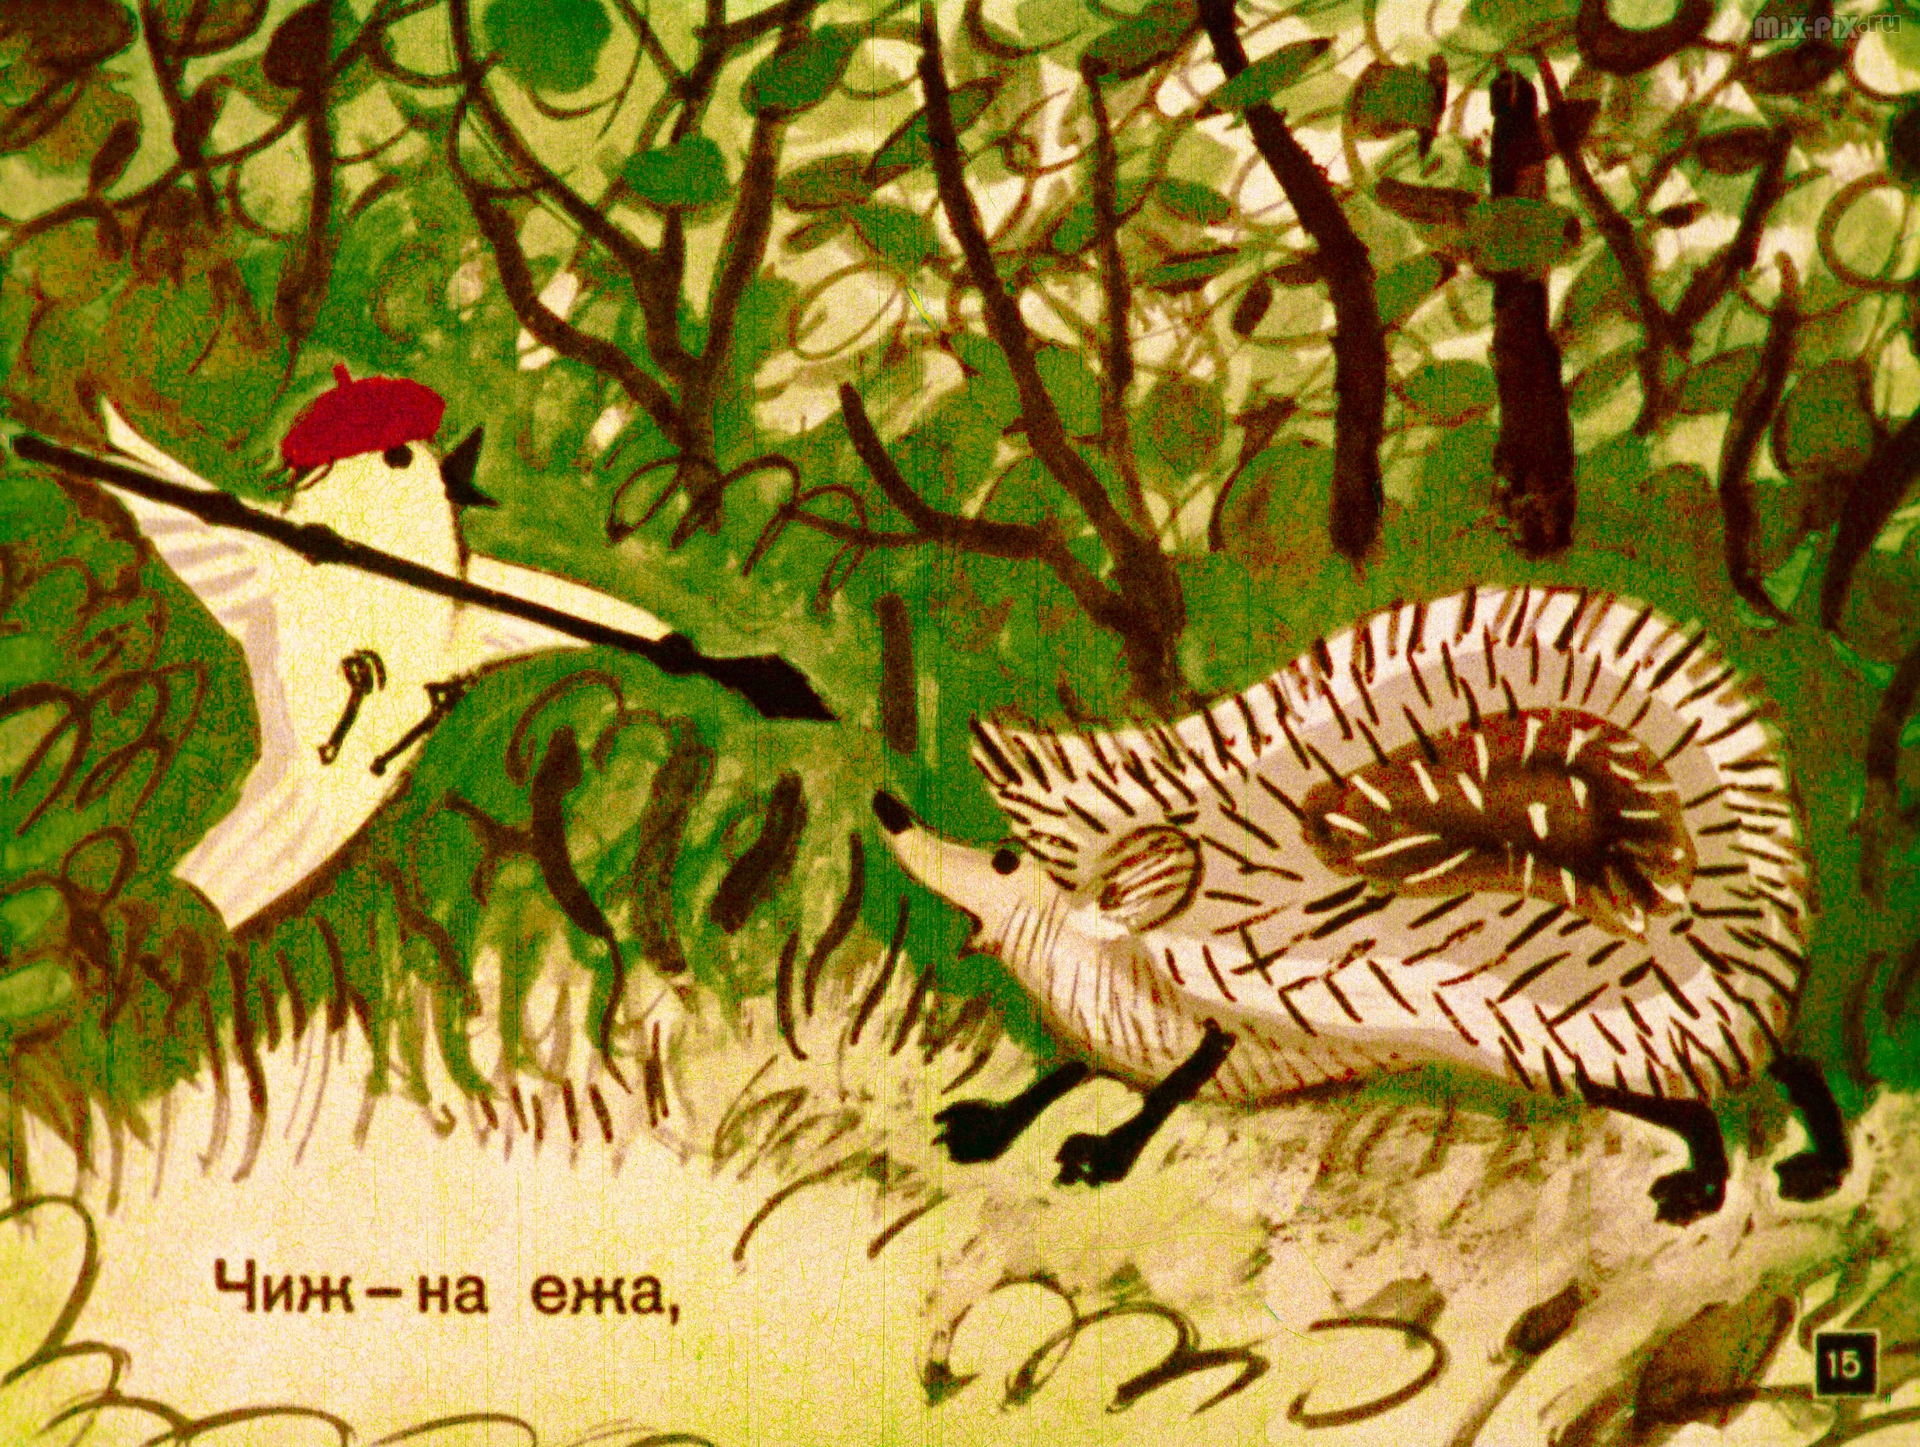 Иллюстрация к басне Крылова Чиж и еж